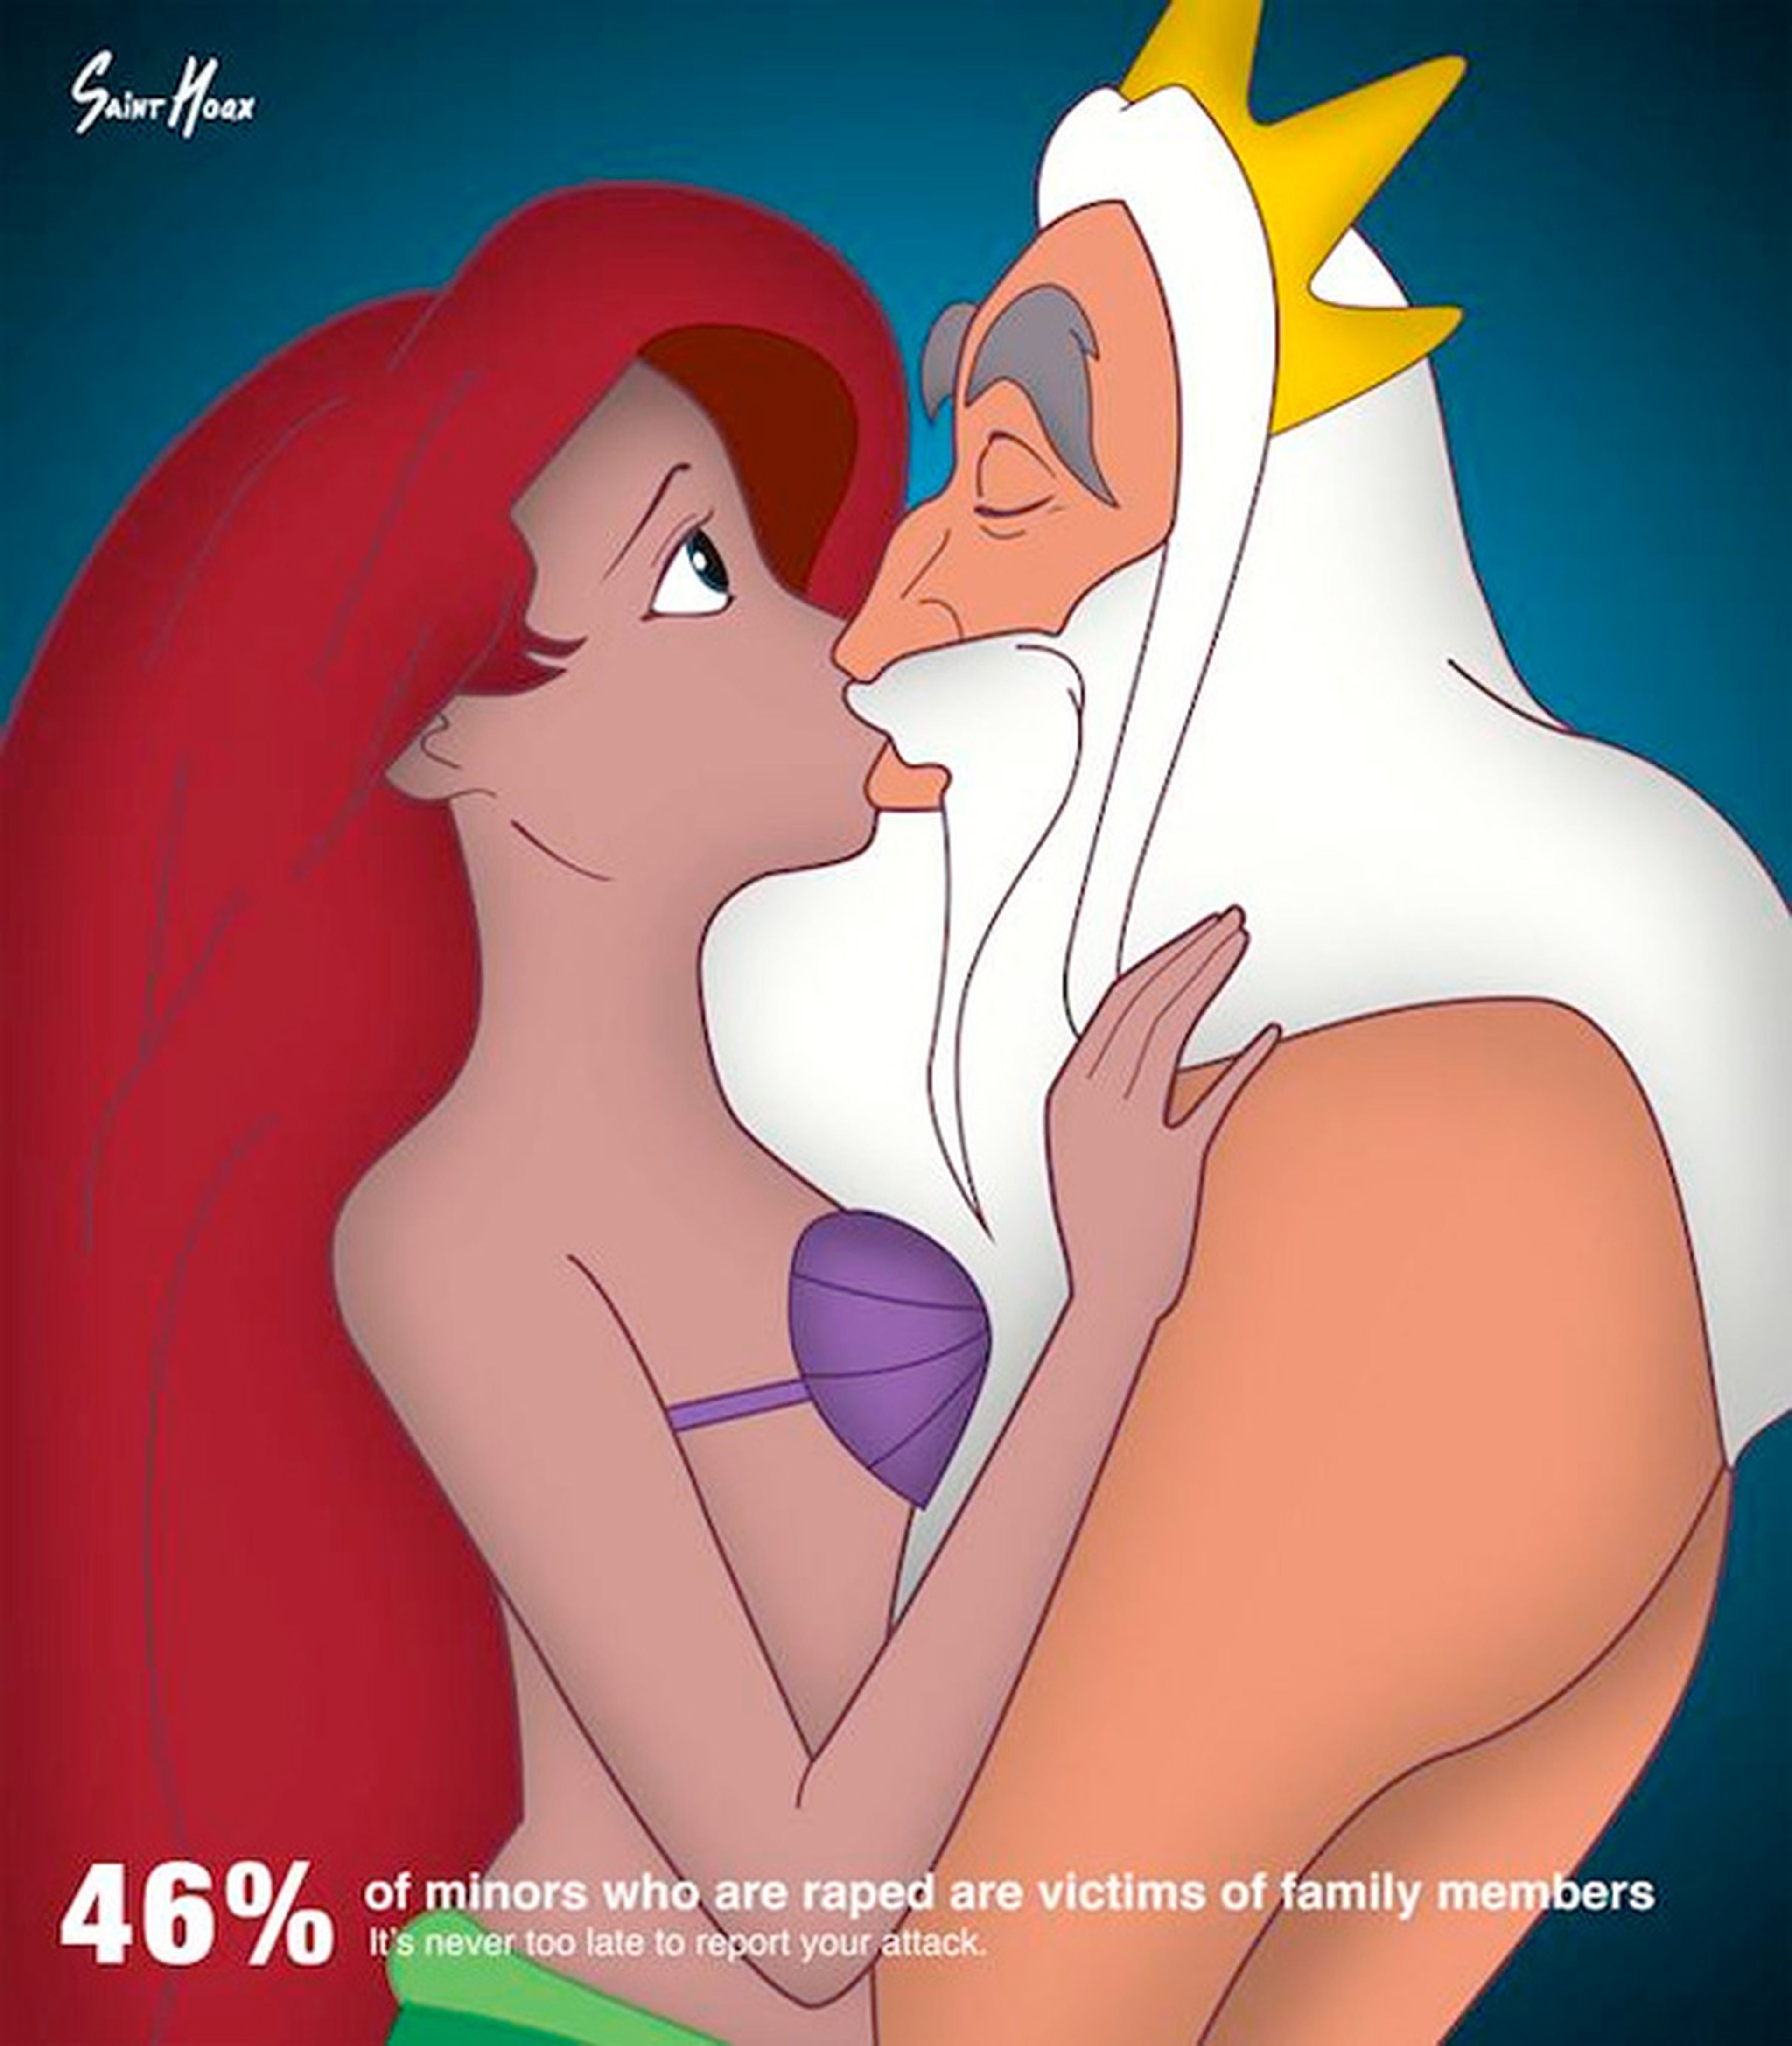 Las princesas Disney besan a sus padres en una campaña contra el abuso infantil